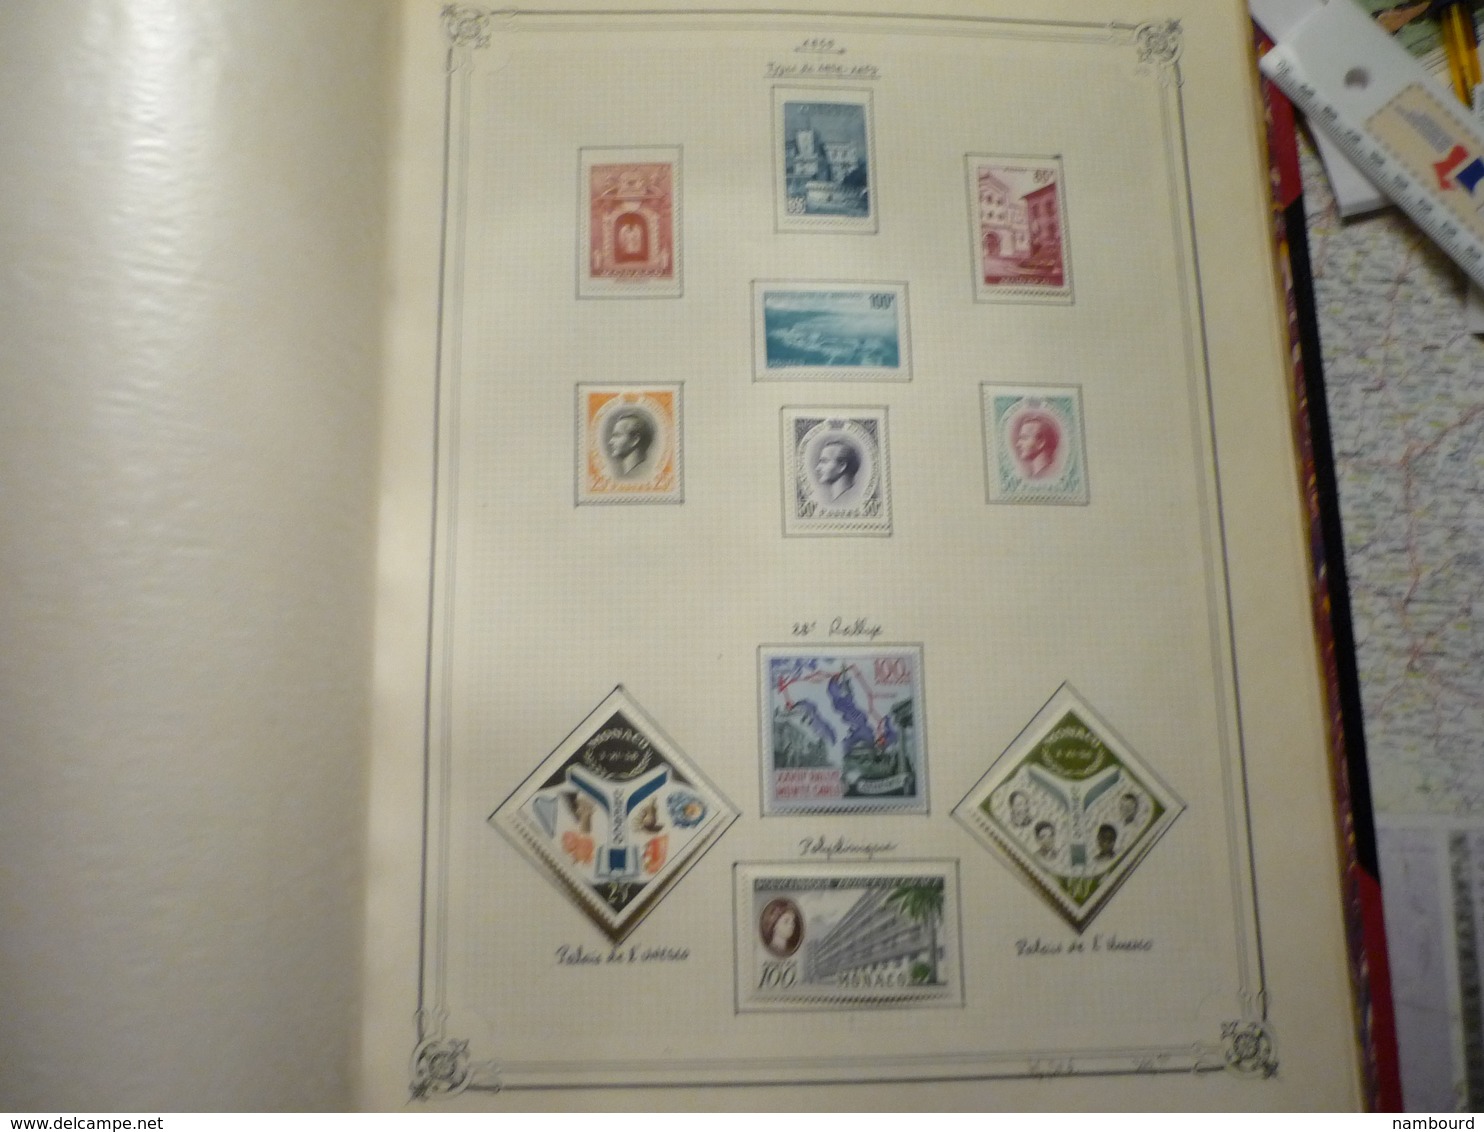 Album et boitier standard Yvert et Tellier collection de timbres de Monaco neufs avec charnières Début-1969